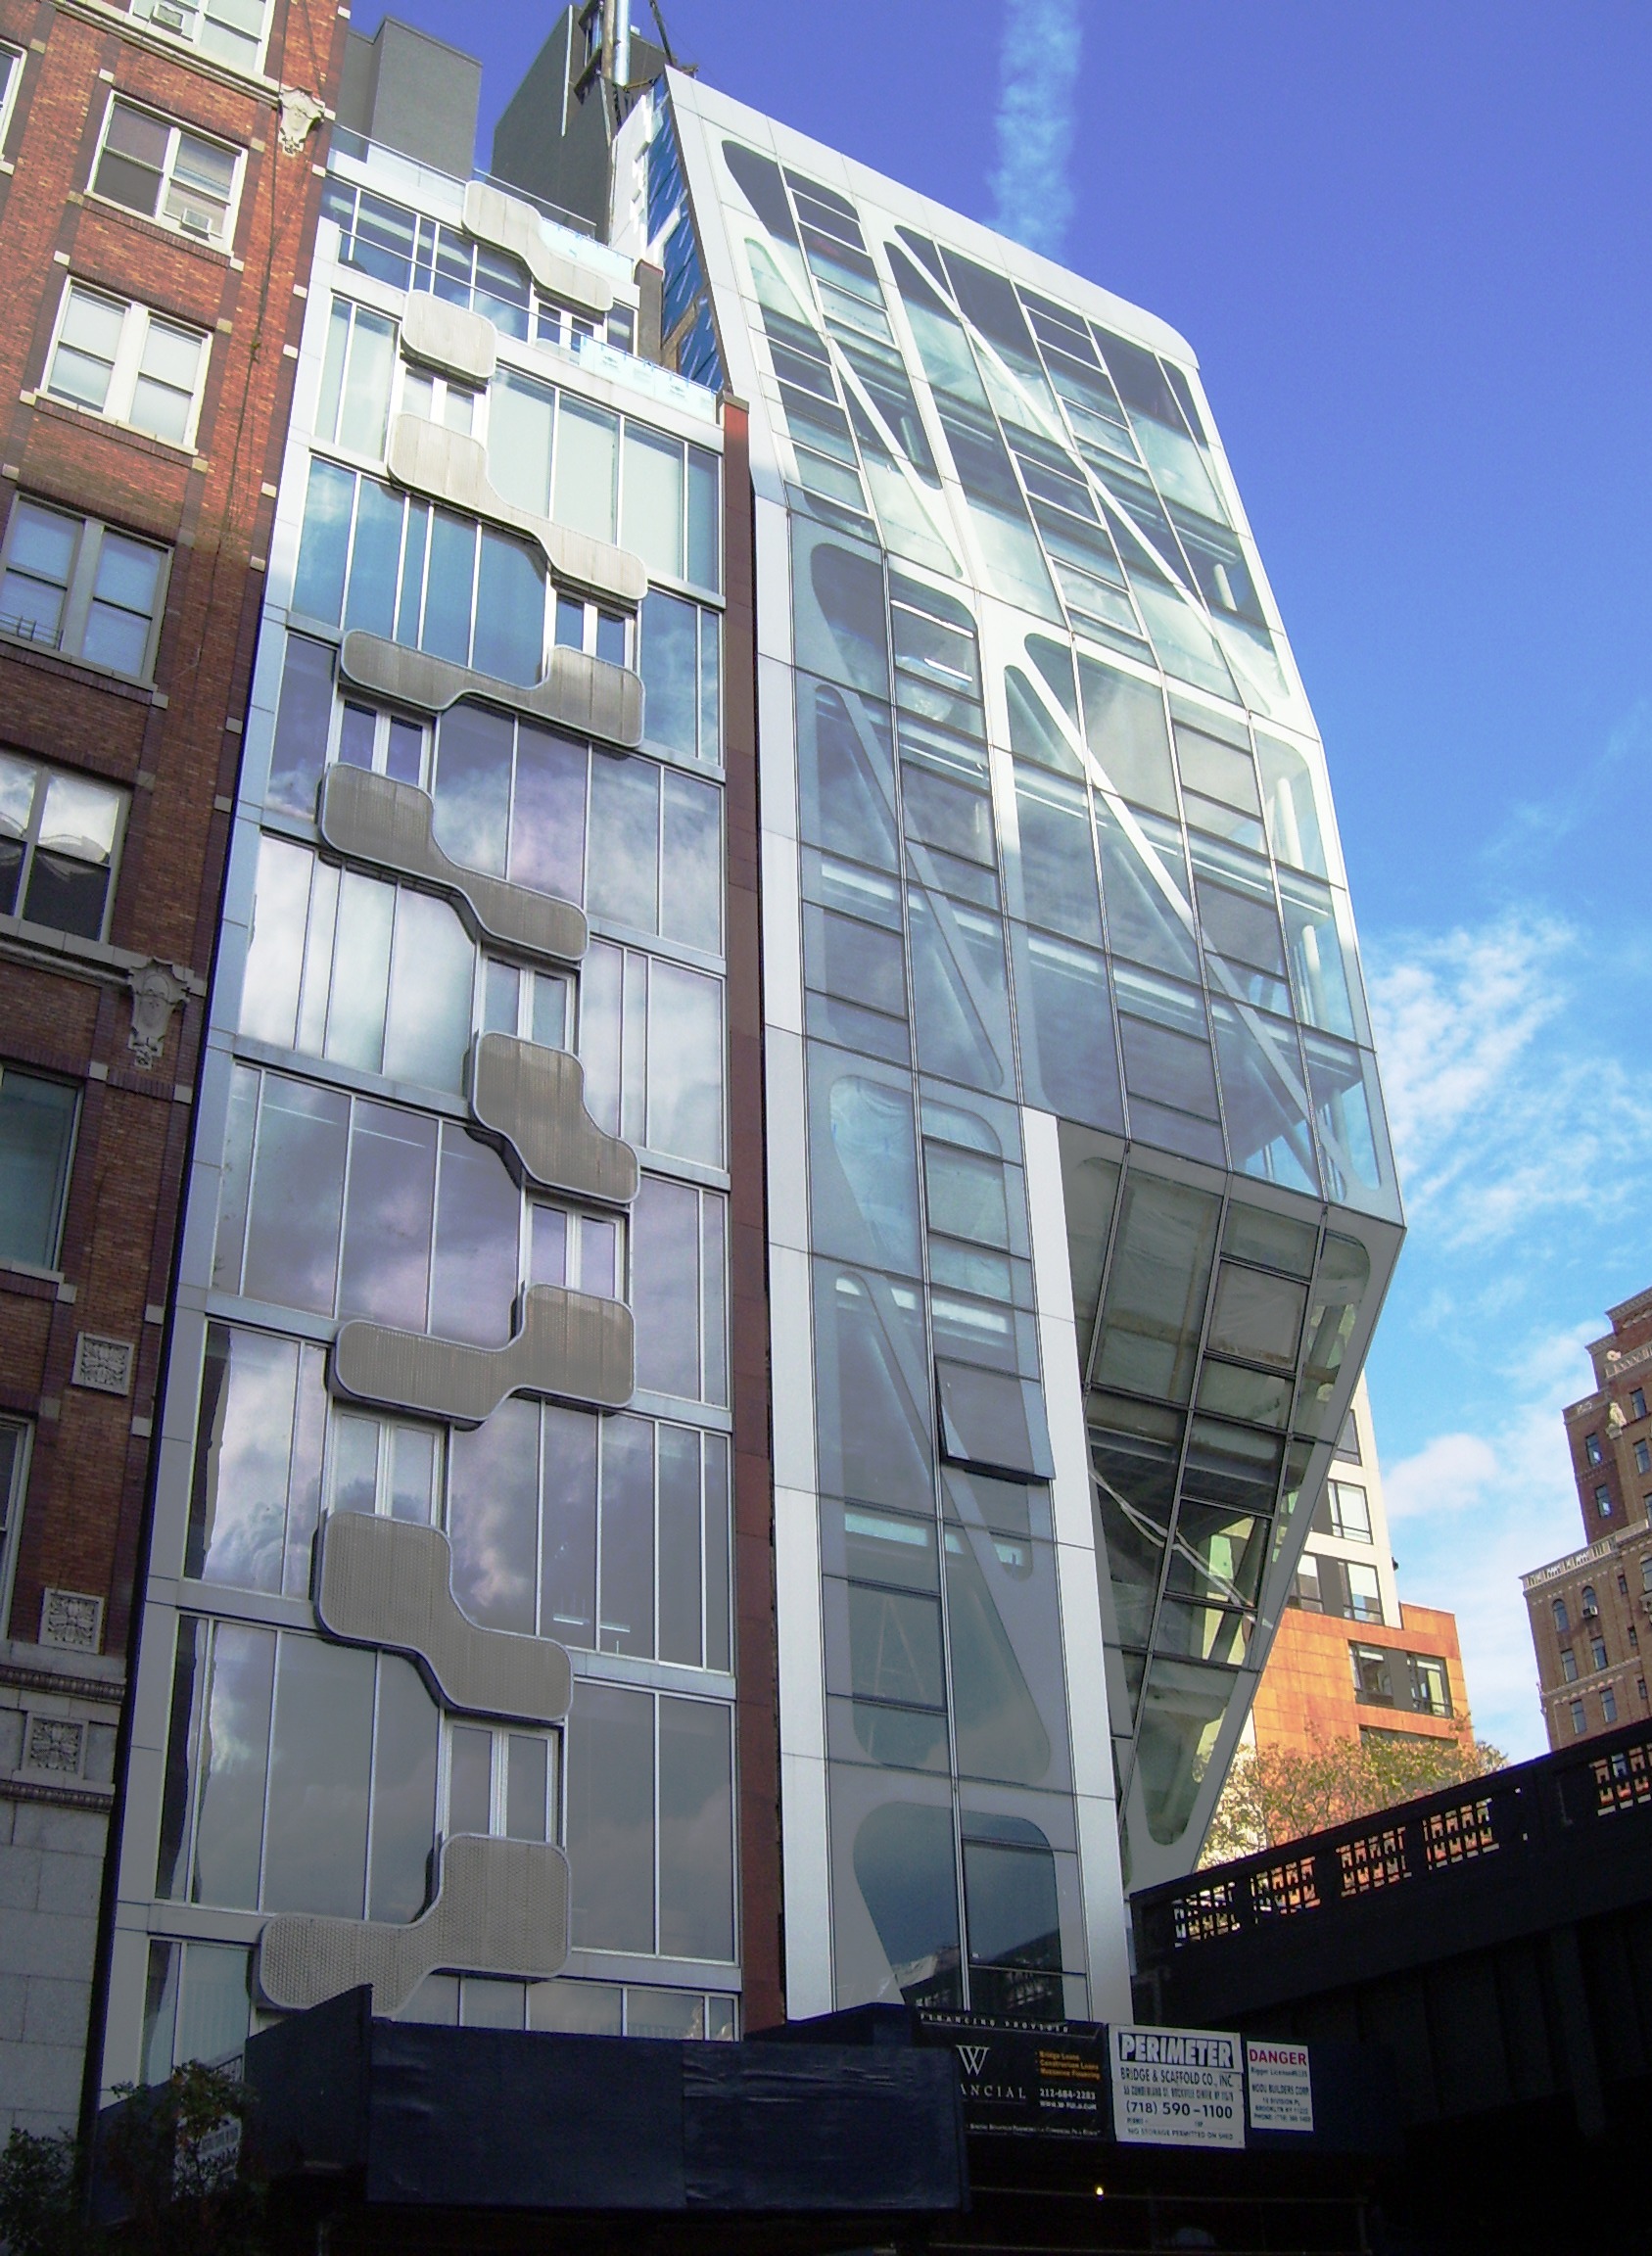 Luxury apartments in Manhattan (Credit: Beyond My Ken)